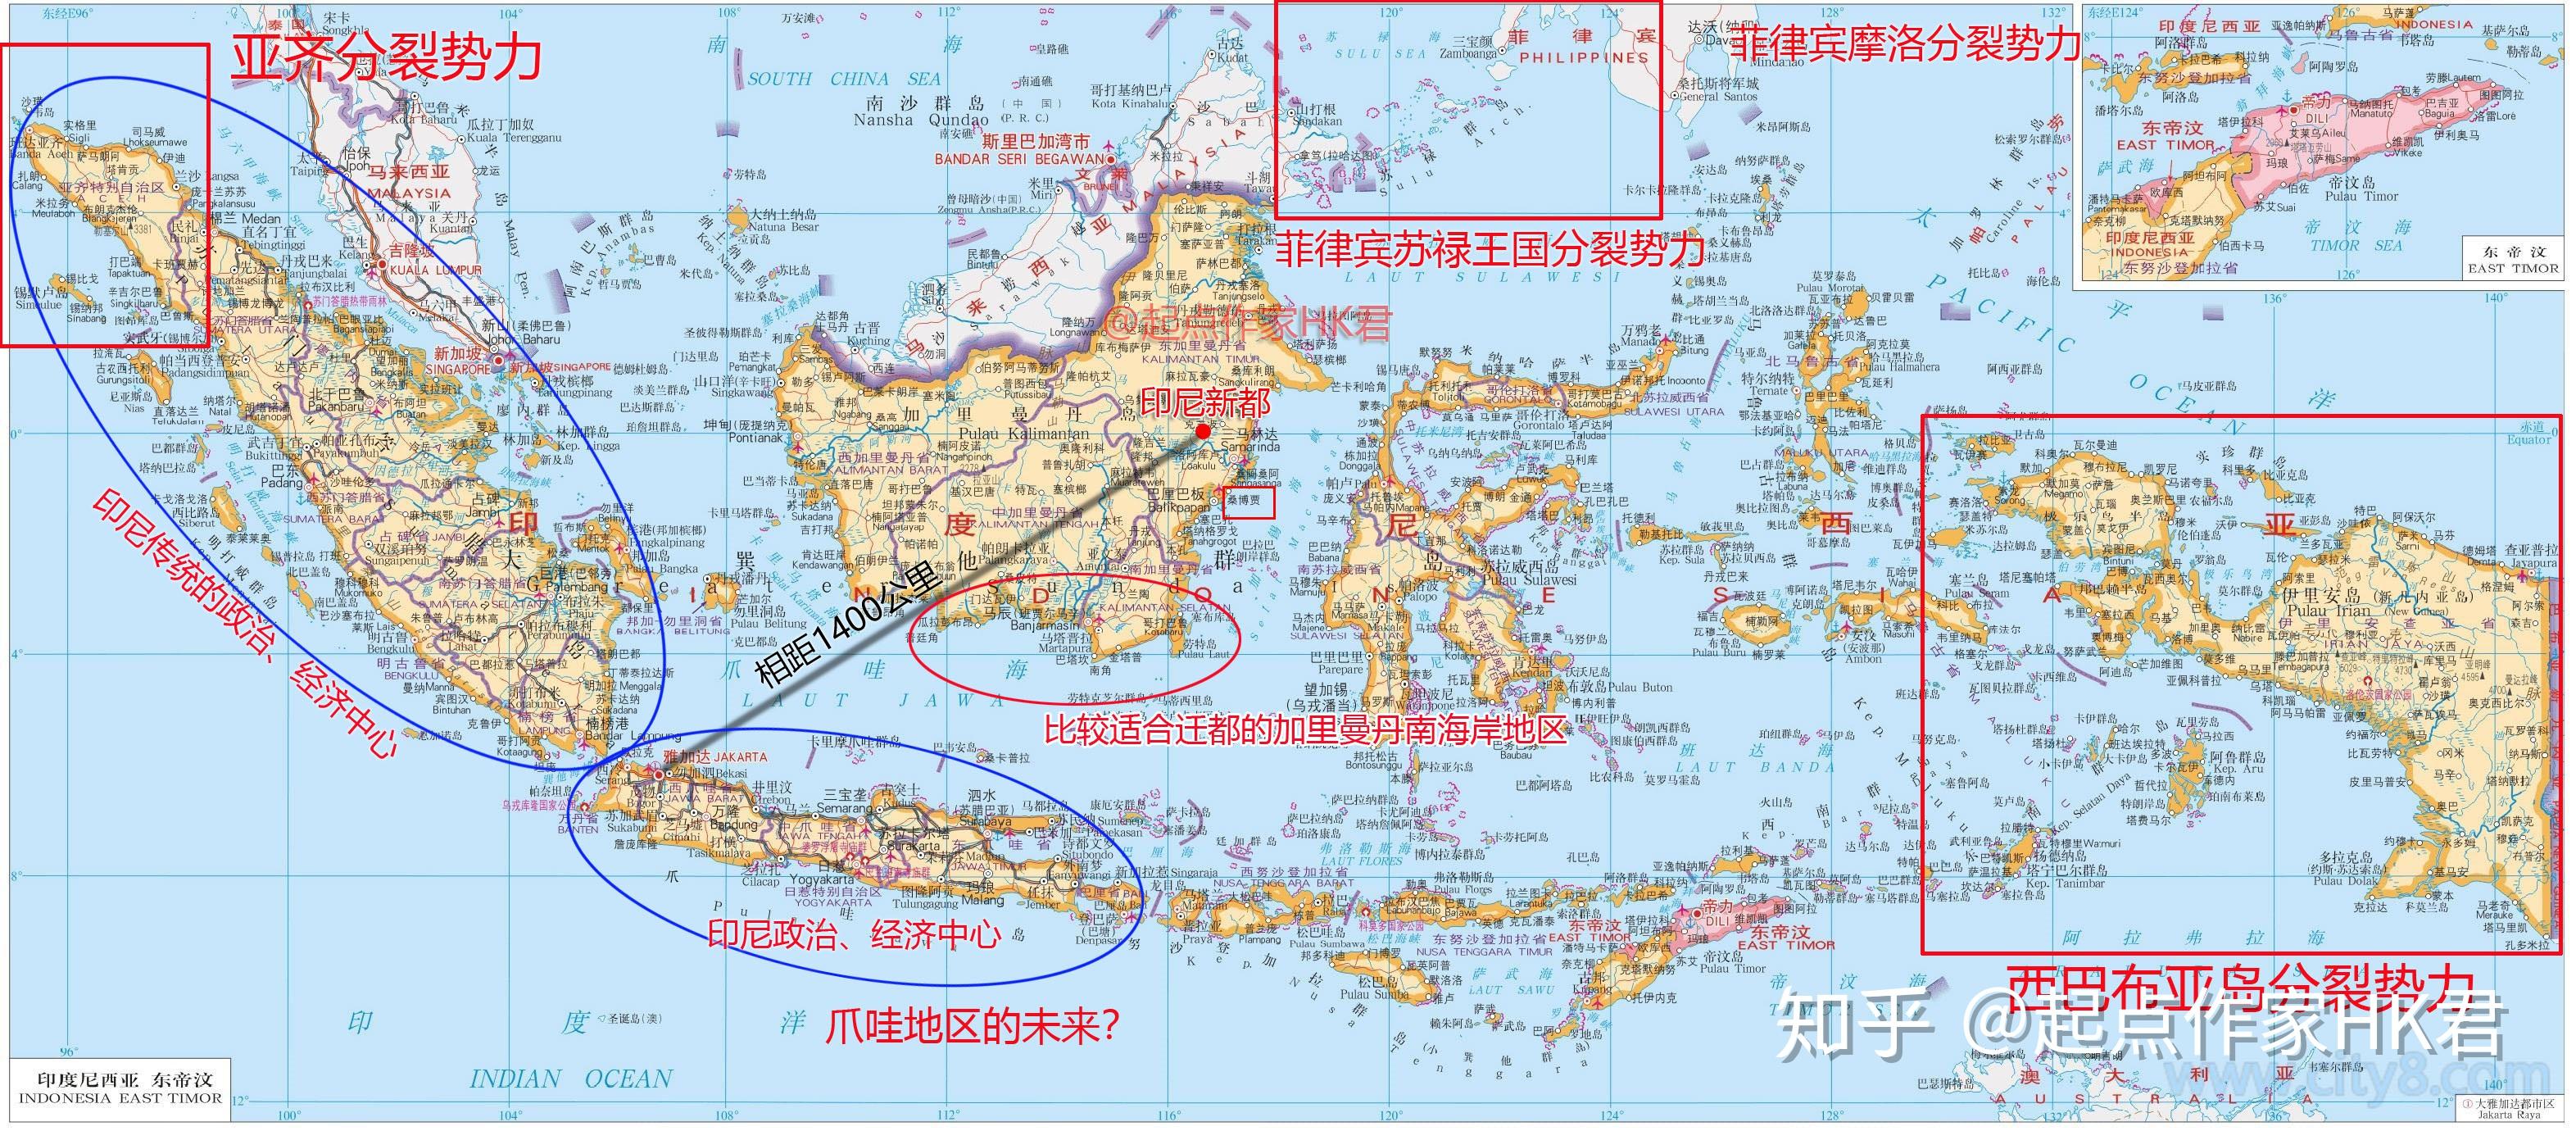 马六甲海峡那么长，涉及到马来西亚和印尼多个地方，为什么是新加坡繁荣起来了？新加坡有什么特别的优势？ - 知乎